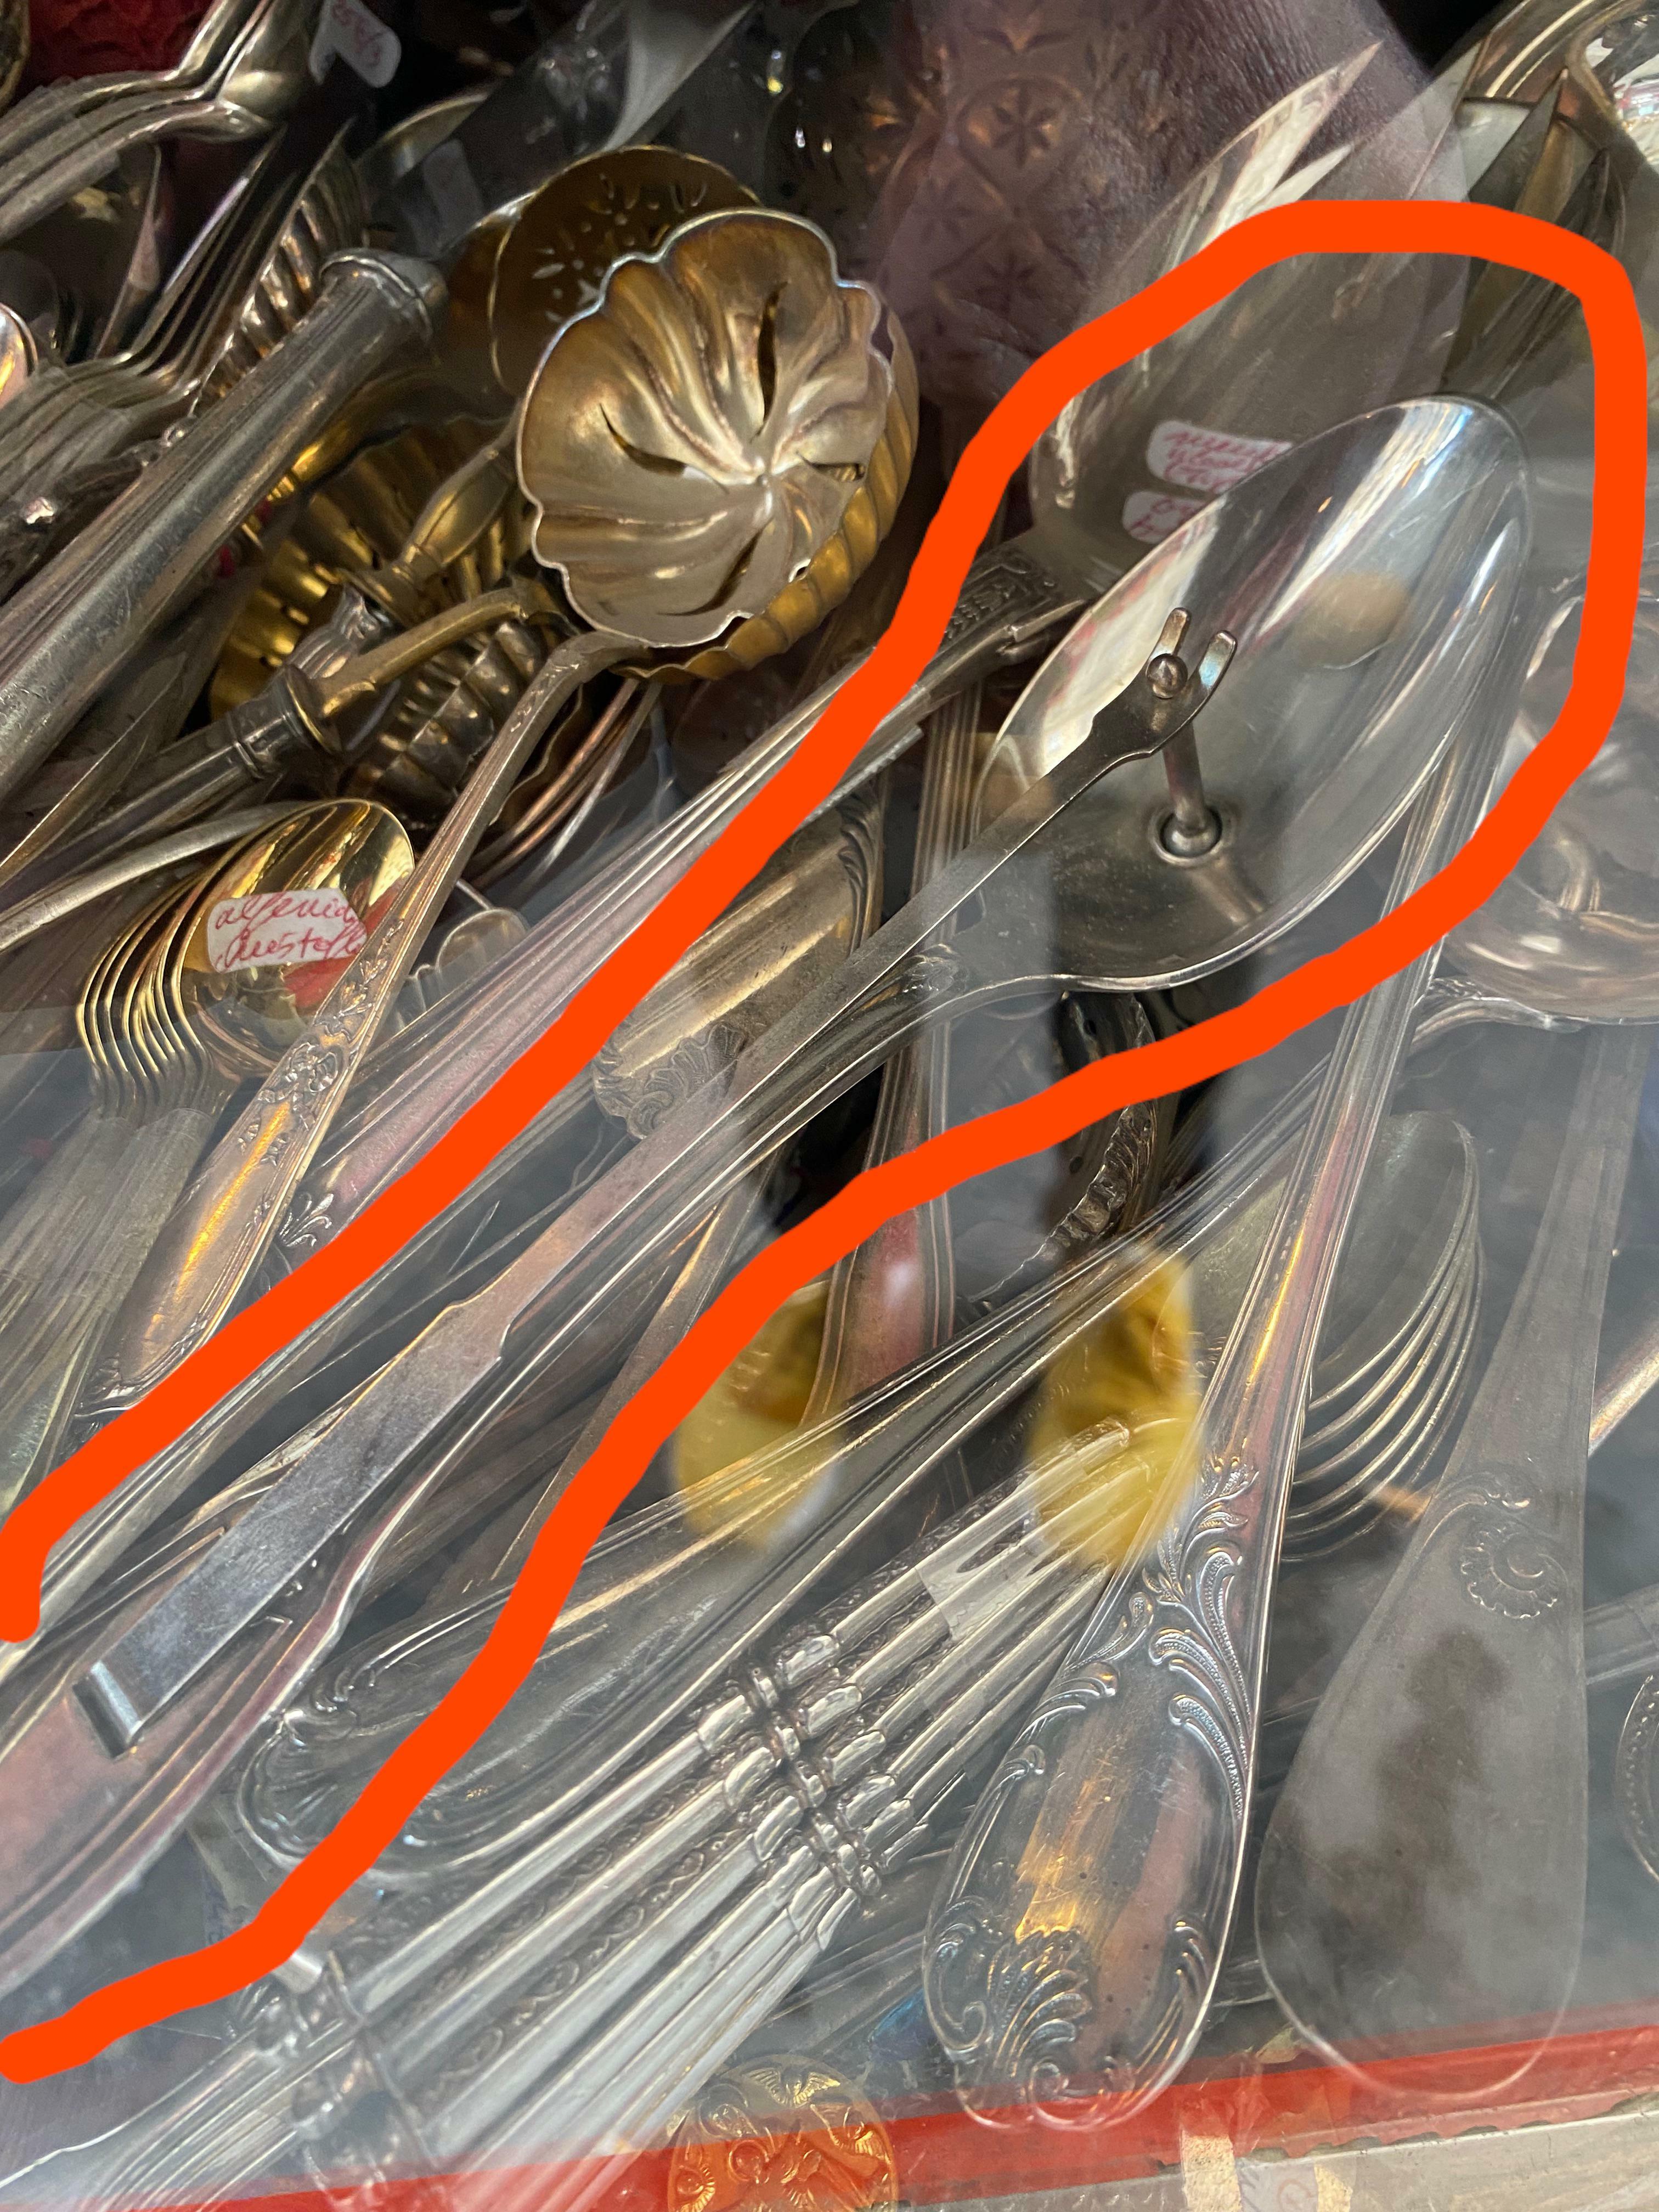 Qu'est-ce que c'est que cette cuillère avec une attache en forme de langue ? vue dans un magasin d'antiquités à Lyon, en France.